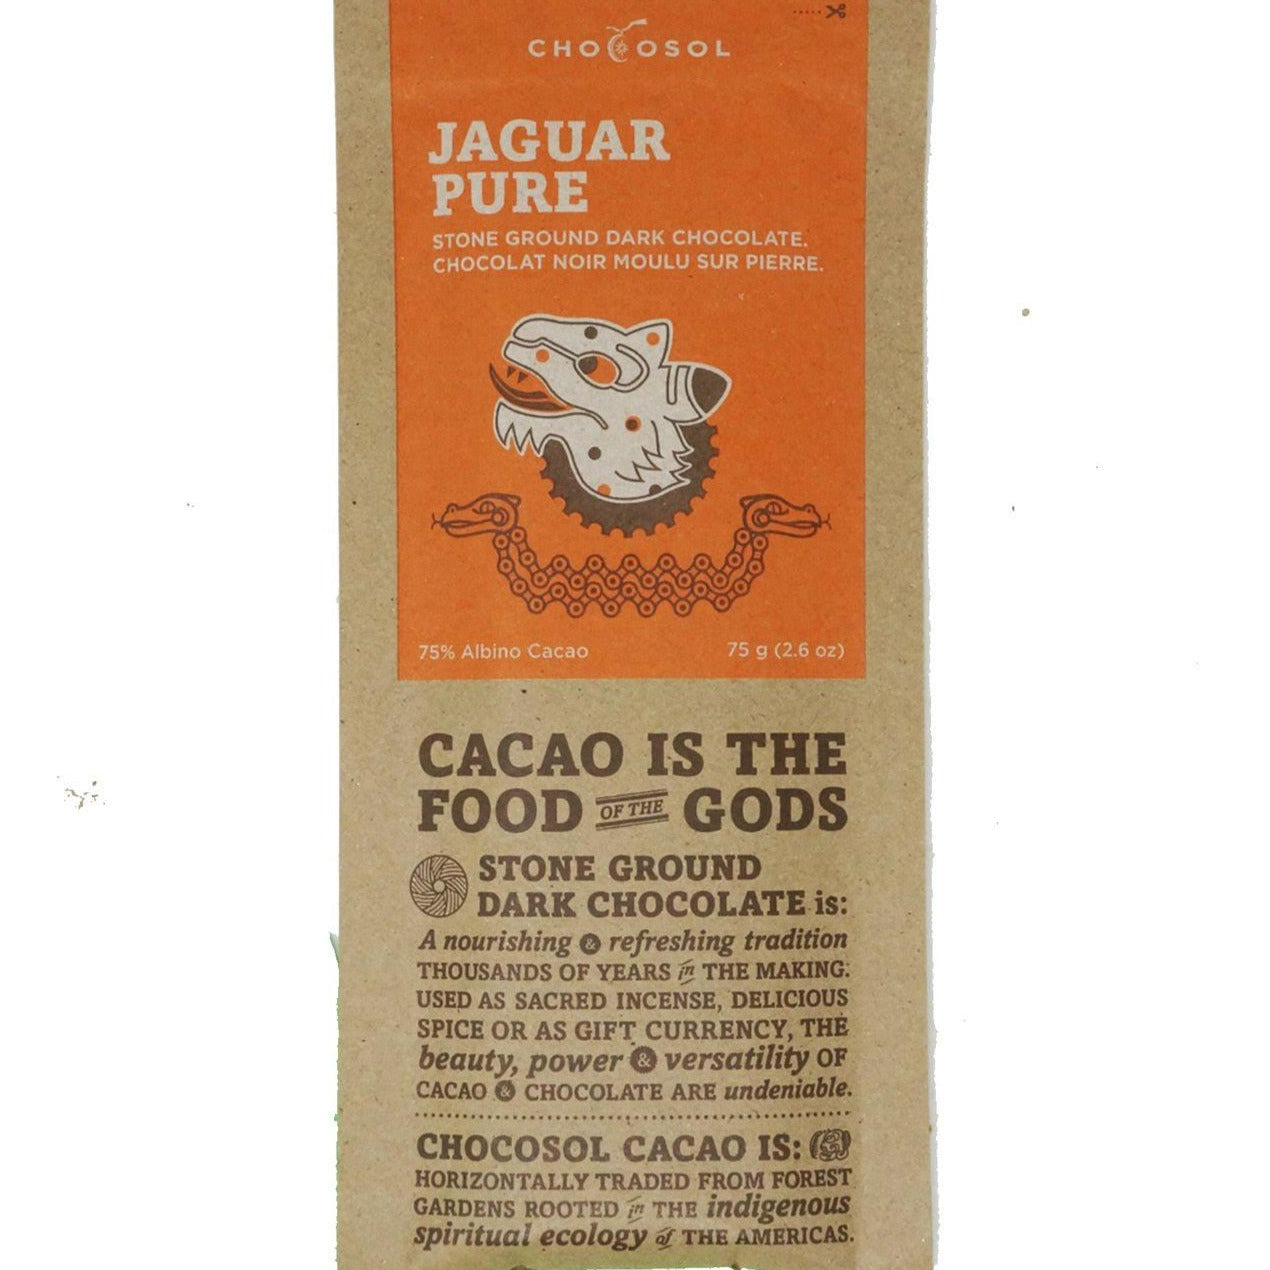 Bag of Jaguar Pure Chocolate.